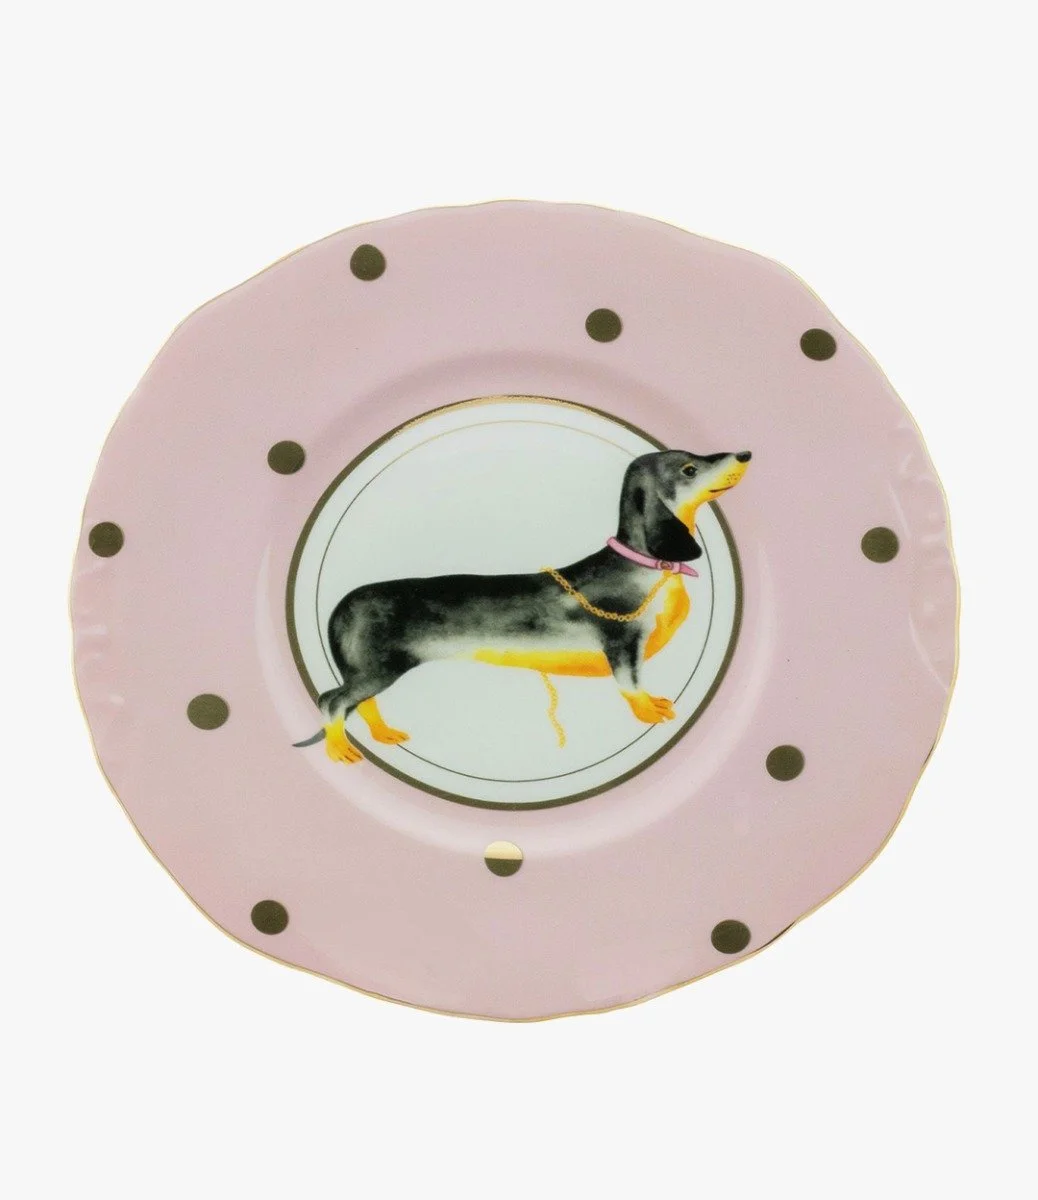 Doggie Sandwich Plate by Yvonne Ellen